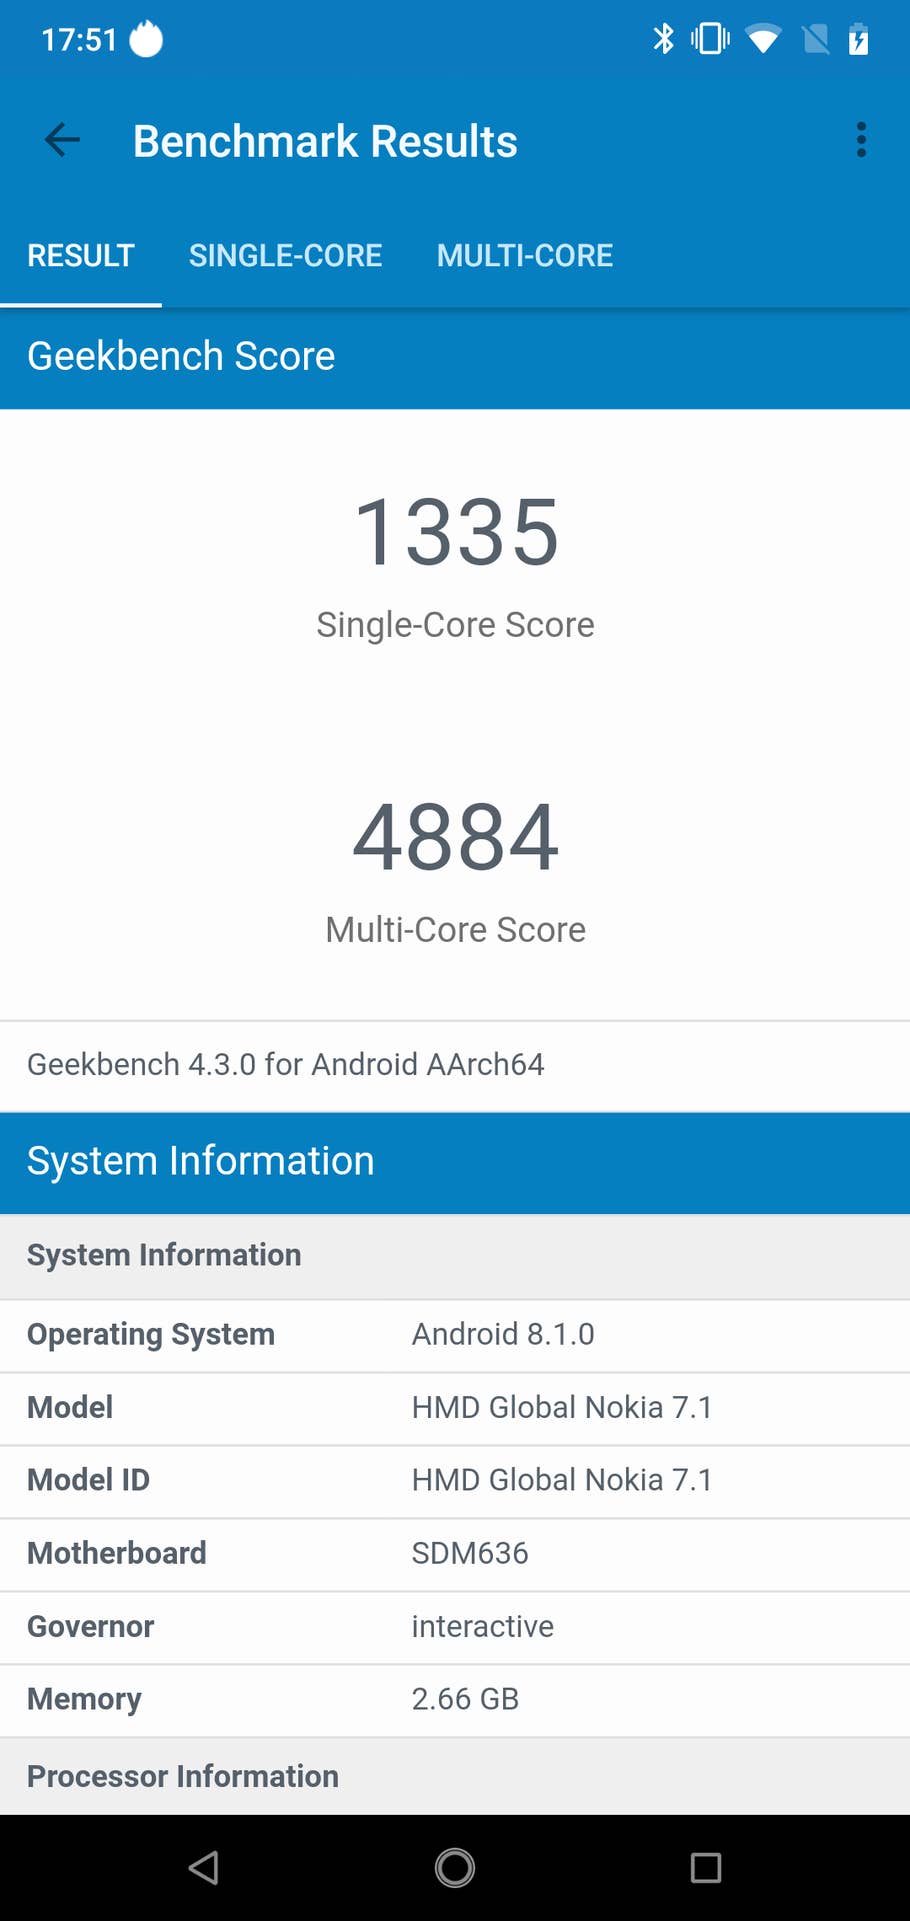 Nokia 7.1 im Test: Benchmark Results Geekbench 4.3.0 Score